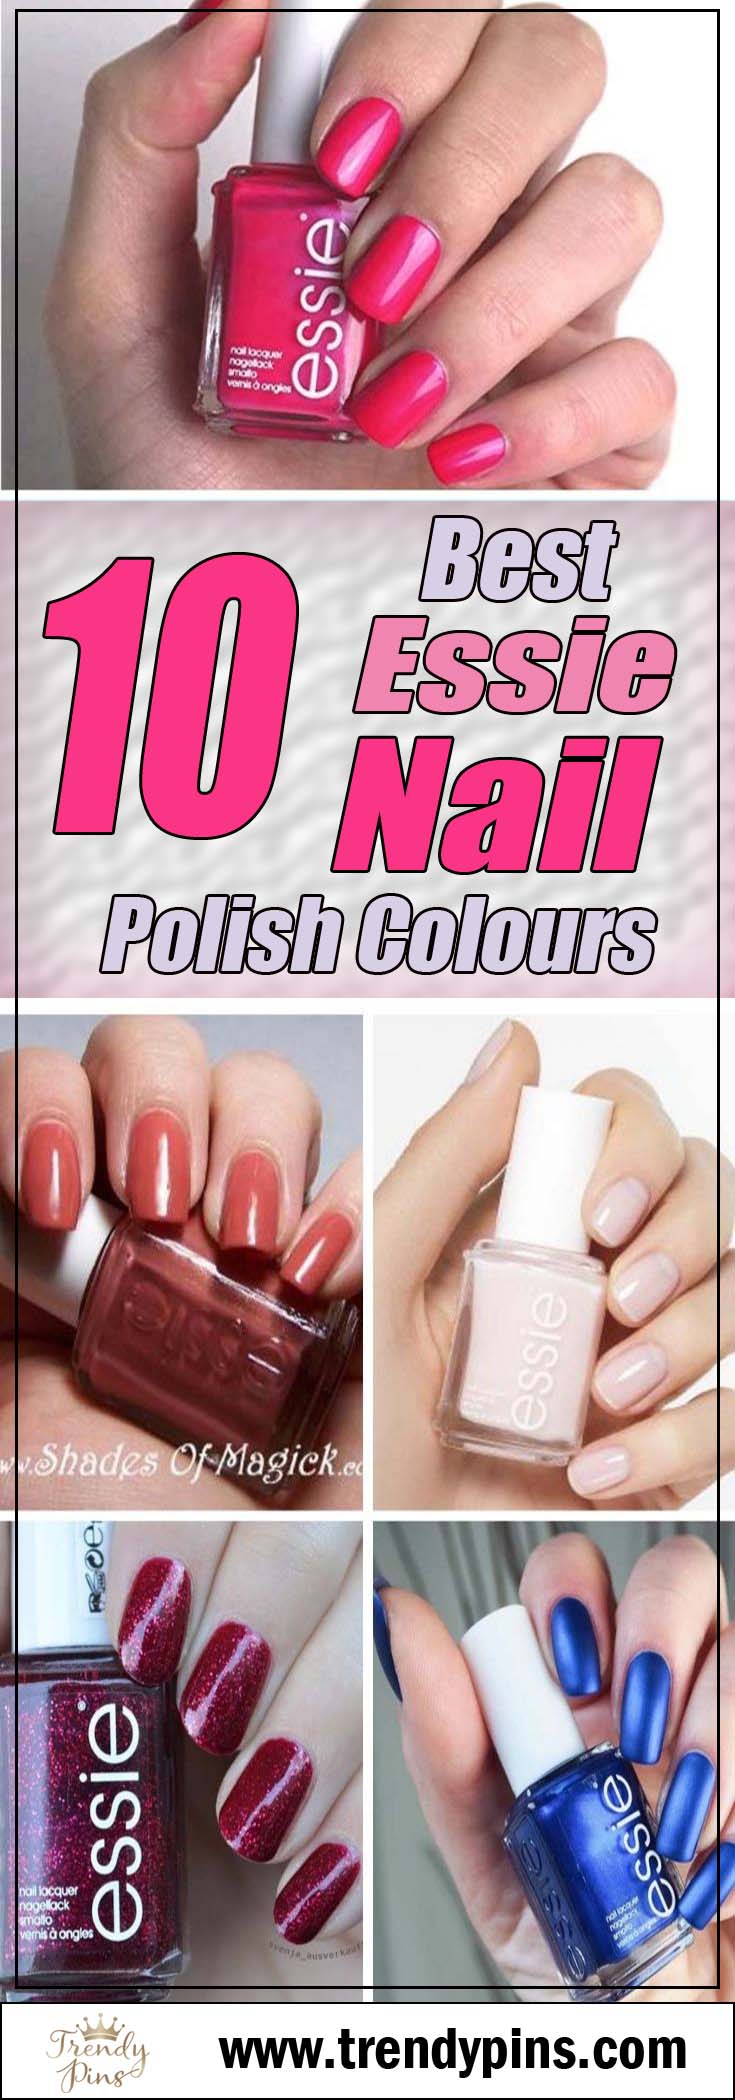 10 Best Essie Nail Polish Colors #nails #Essie #trendypins